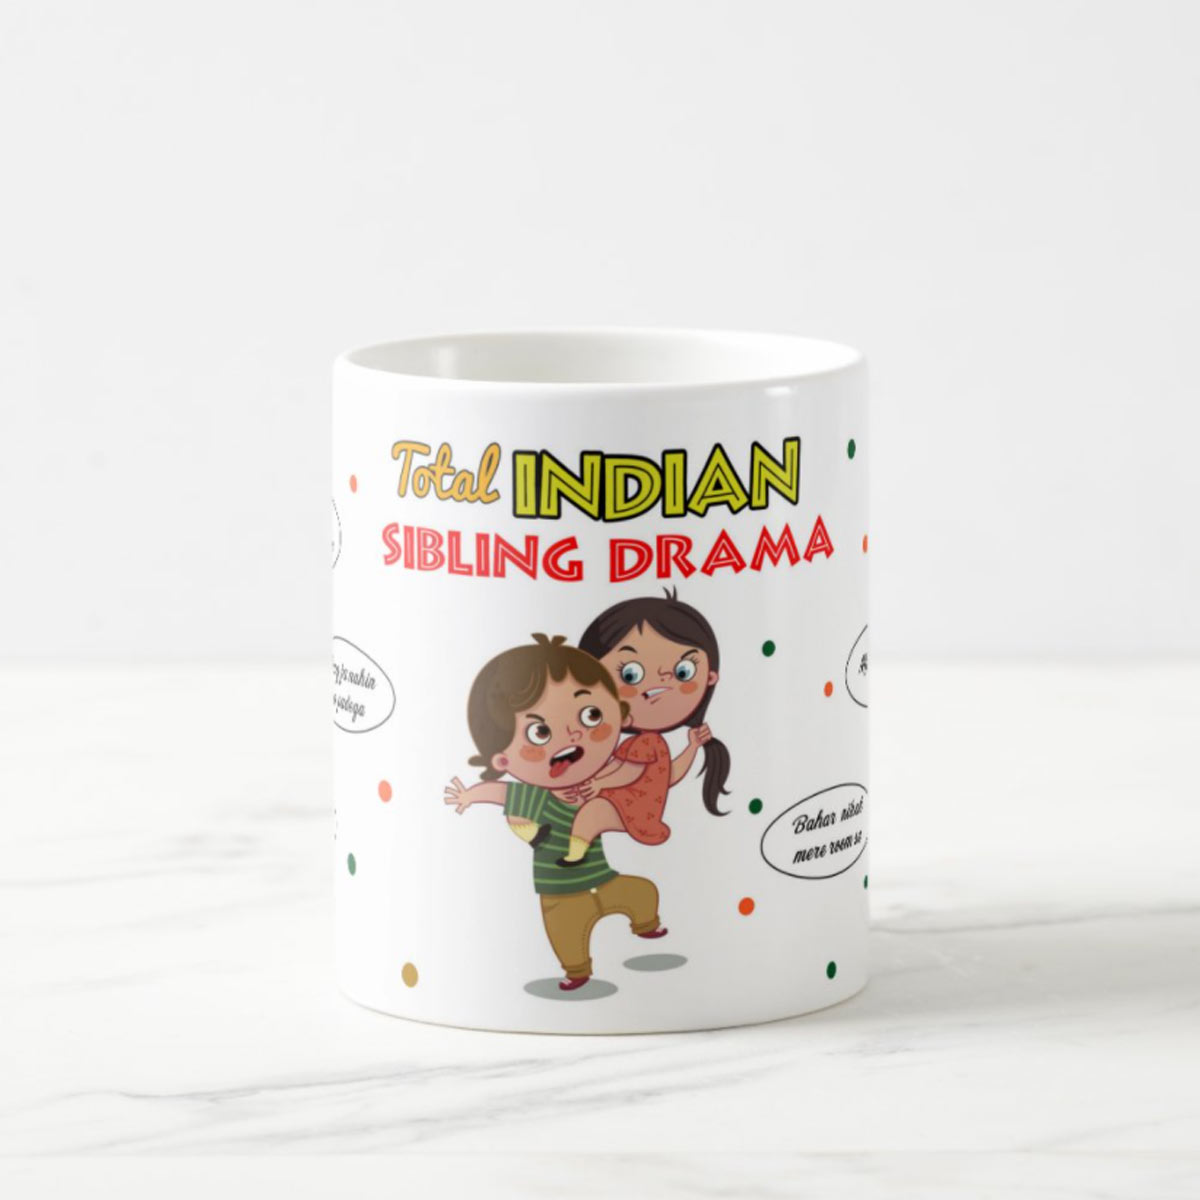 Total Indian Sibling Drama Mug